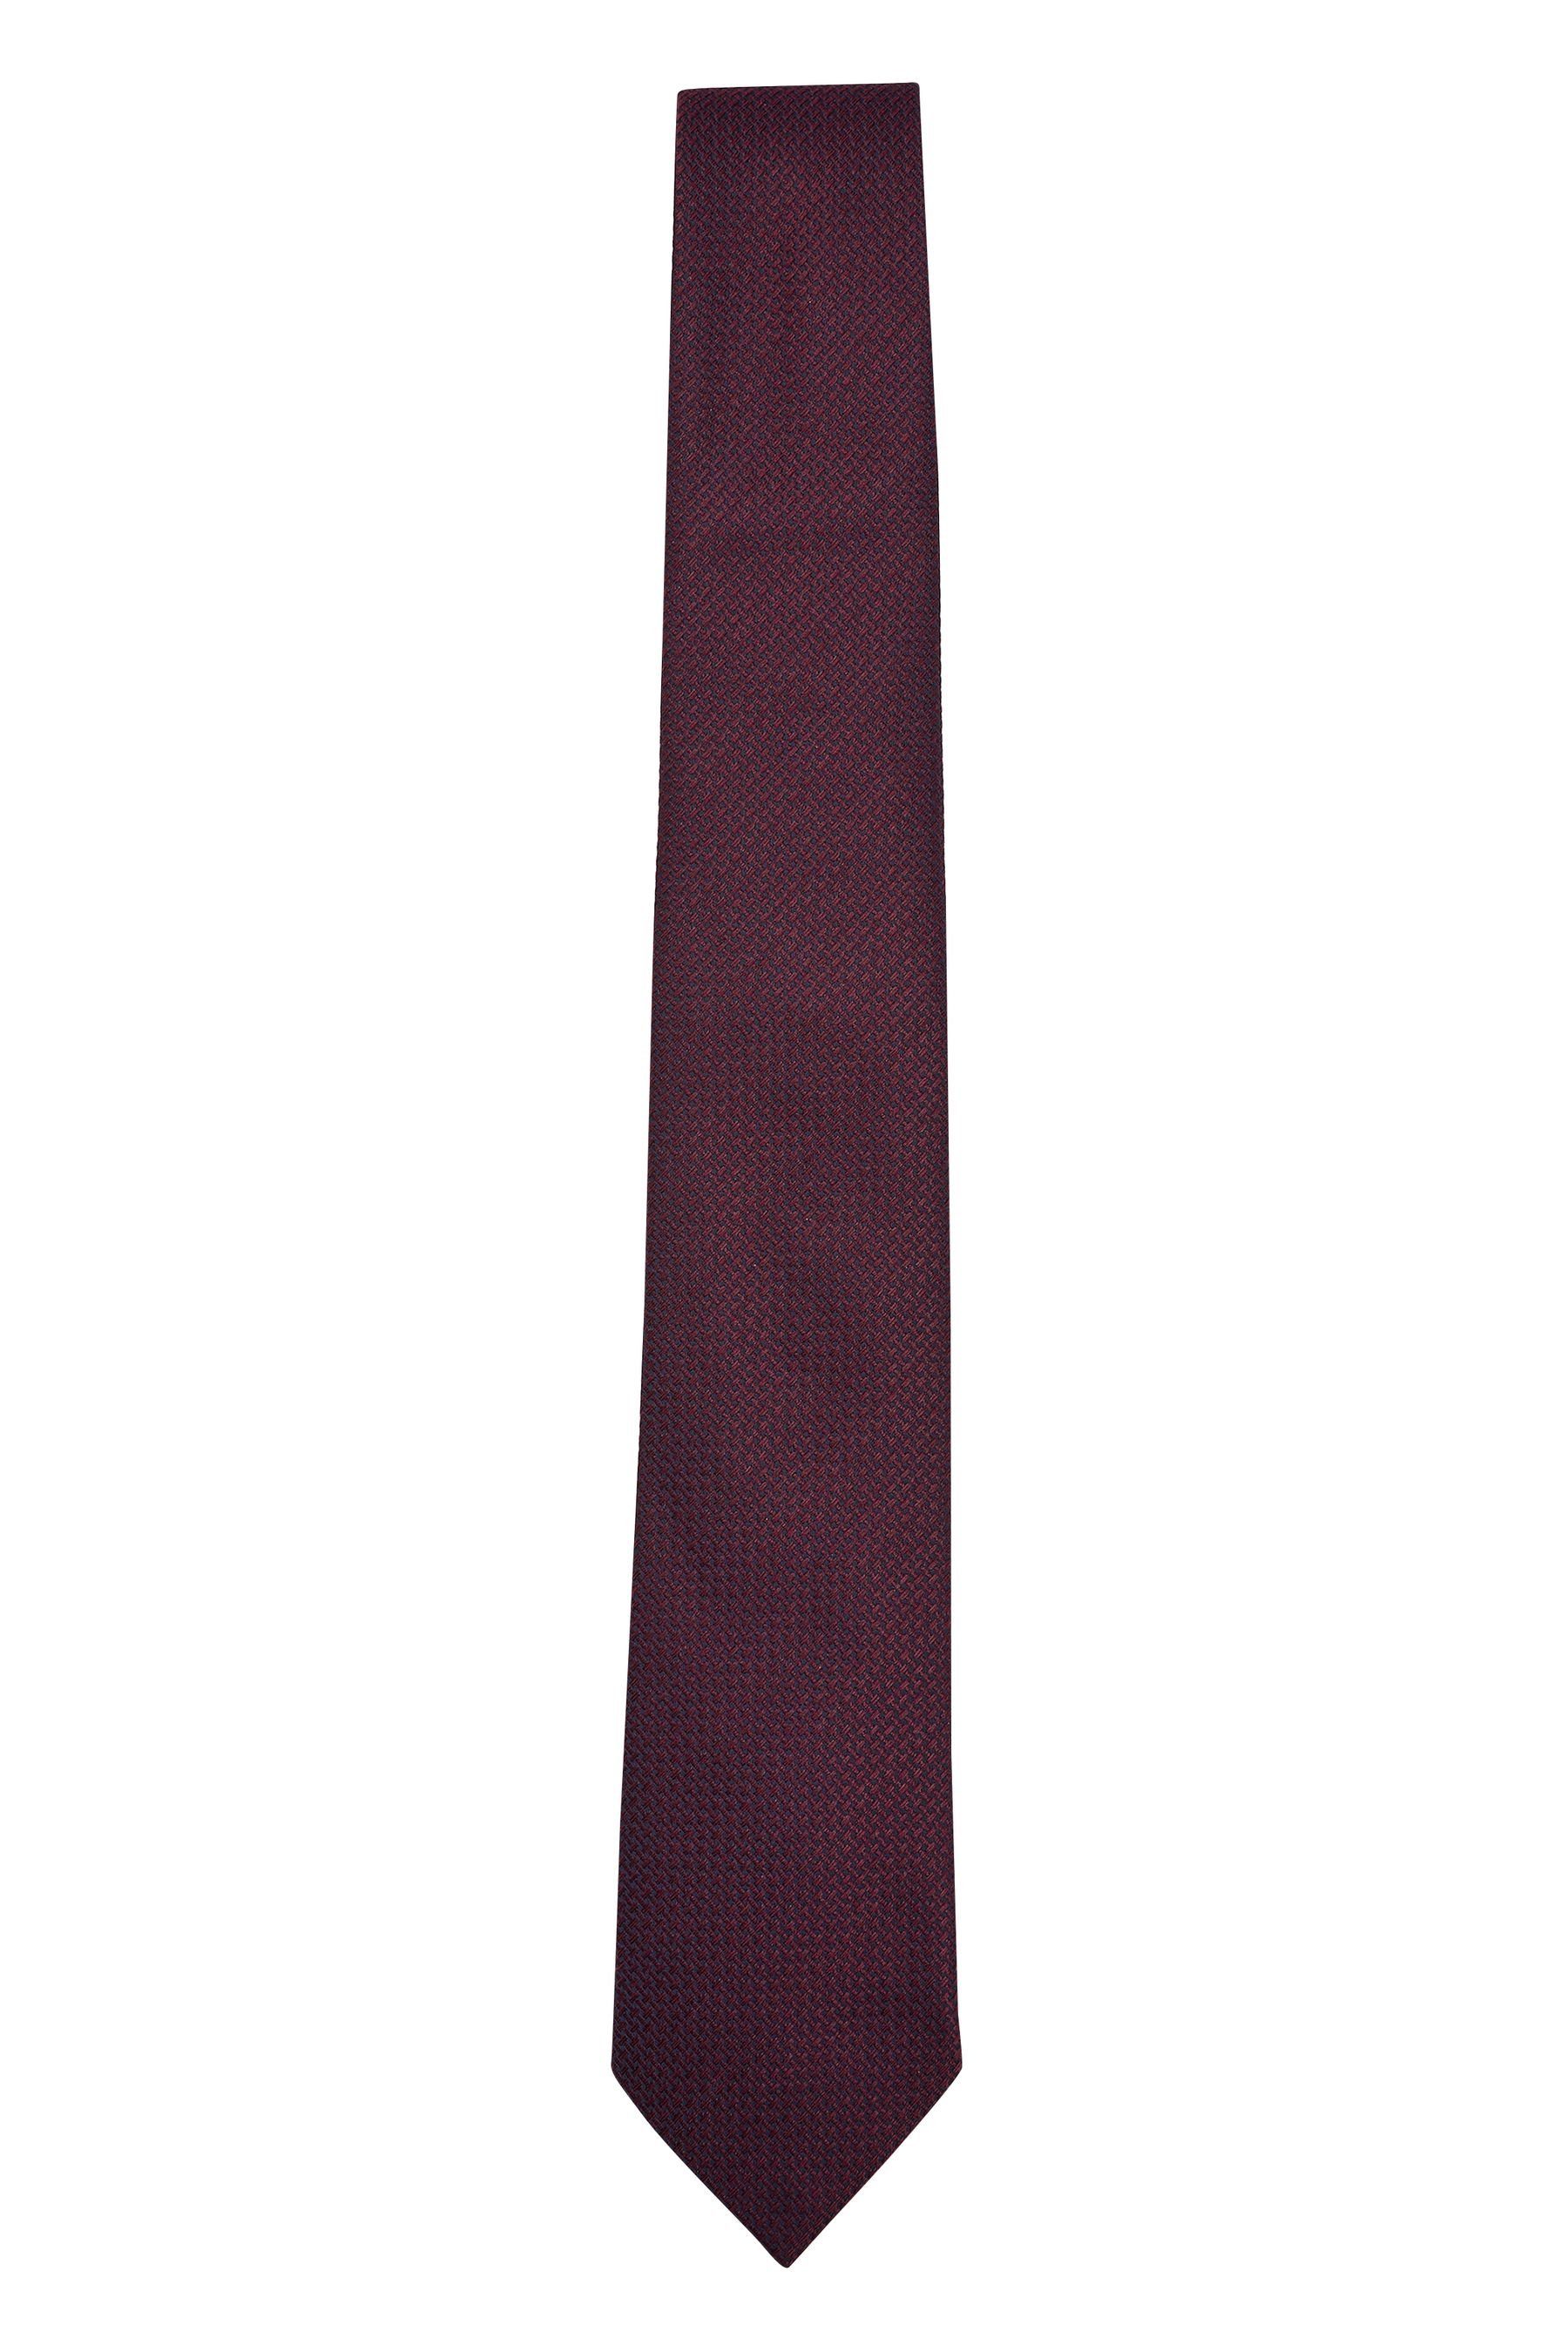 Next Krawatte Strukturierte Krawatte Red (1-St) Burgundy